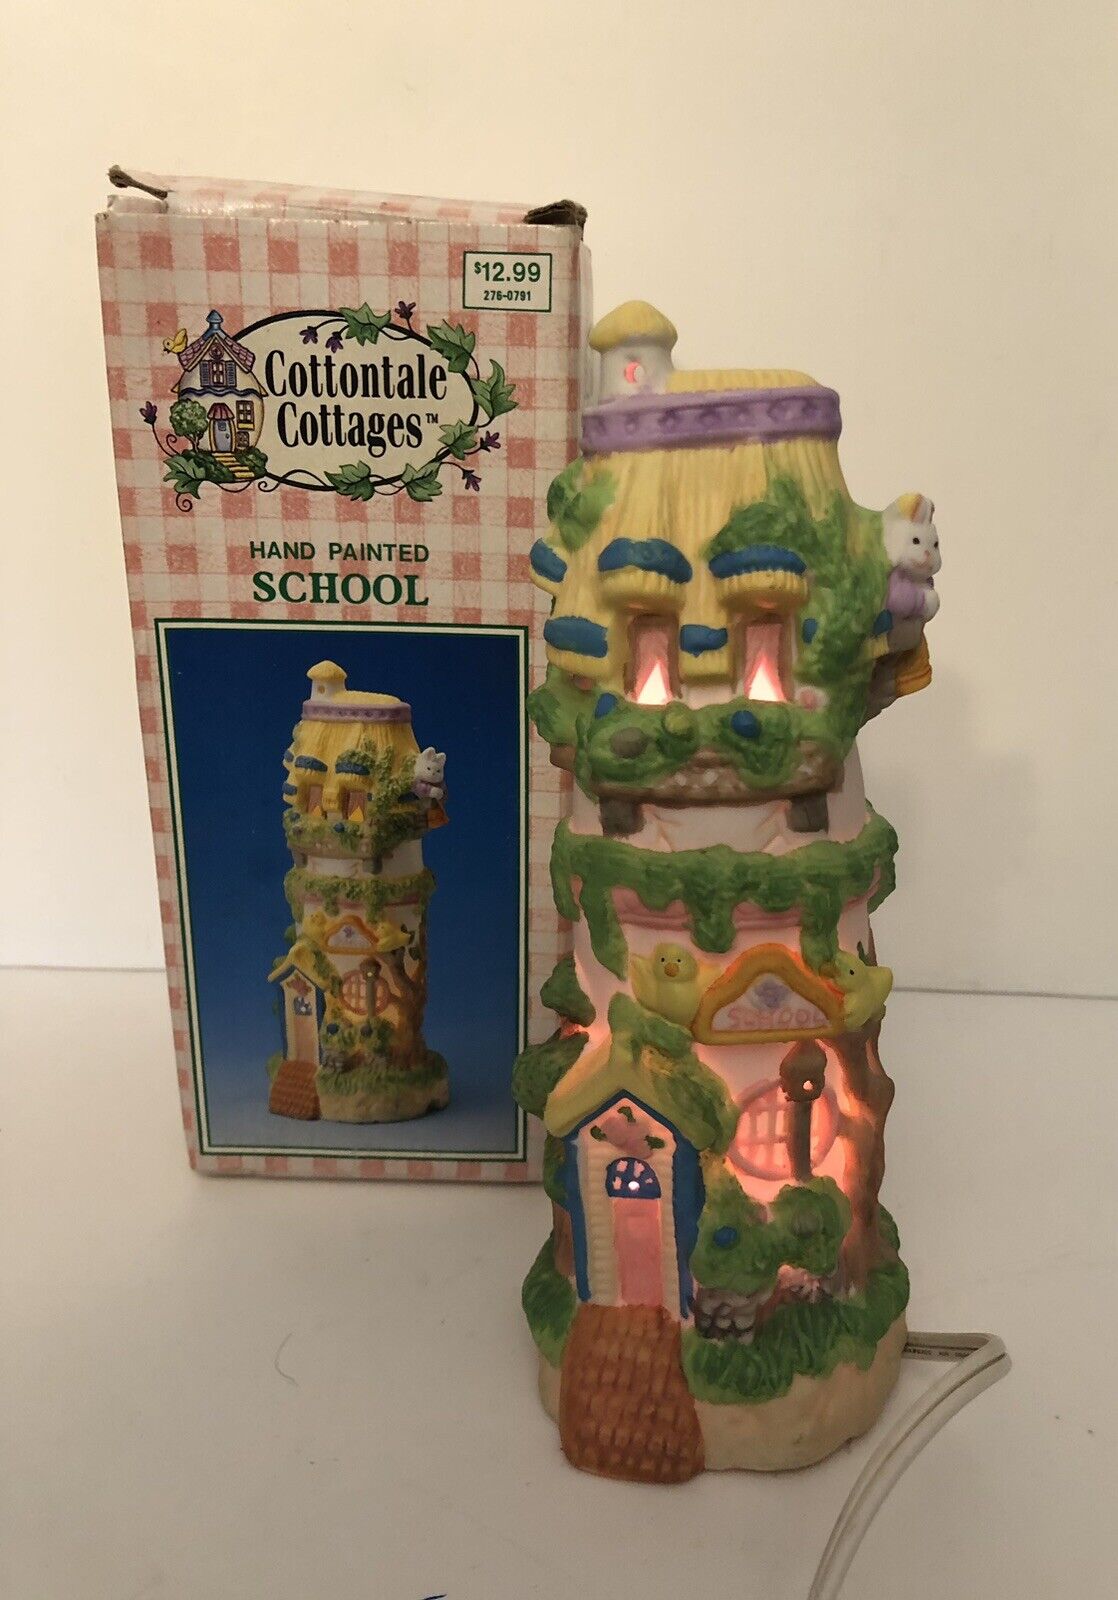 1995 Cottontale Cottages School Light Up Porcelain Easter Village